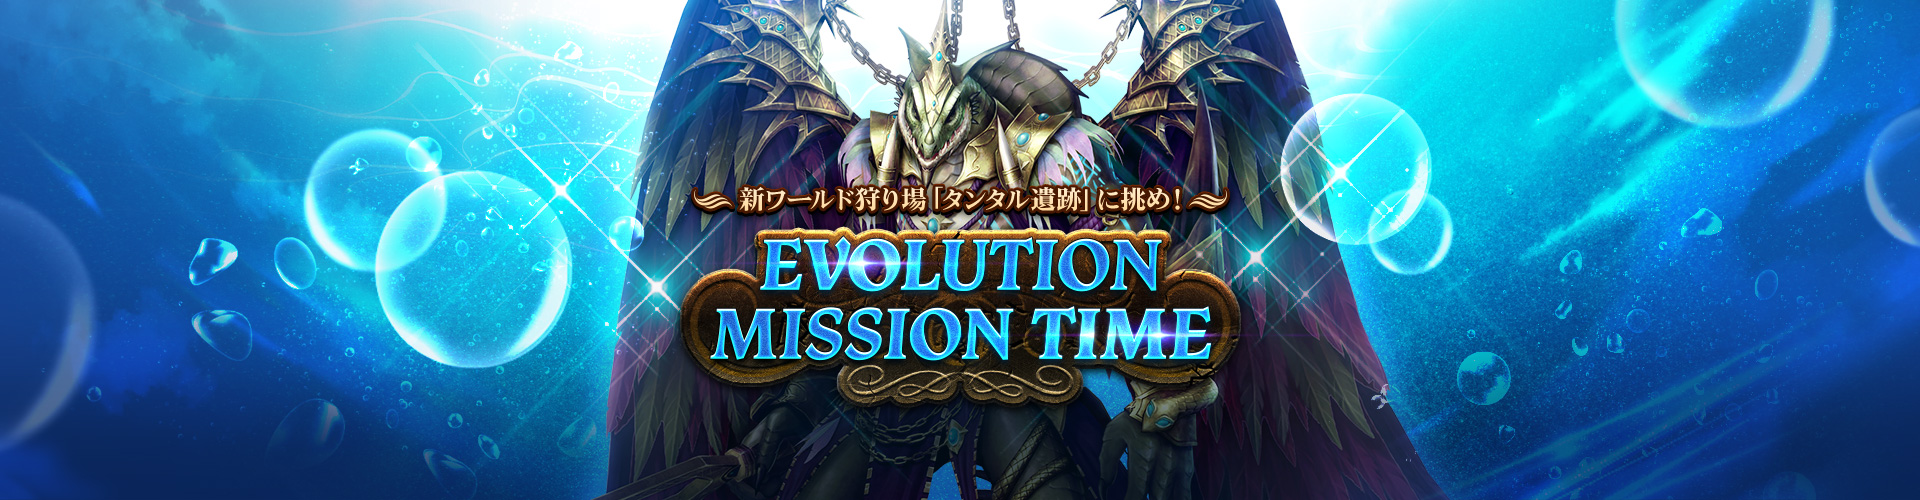 EVOLUTION MISSION